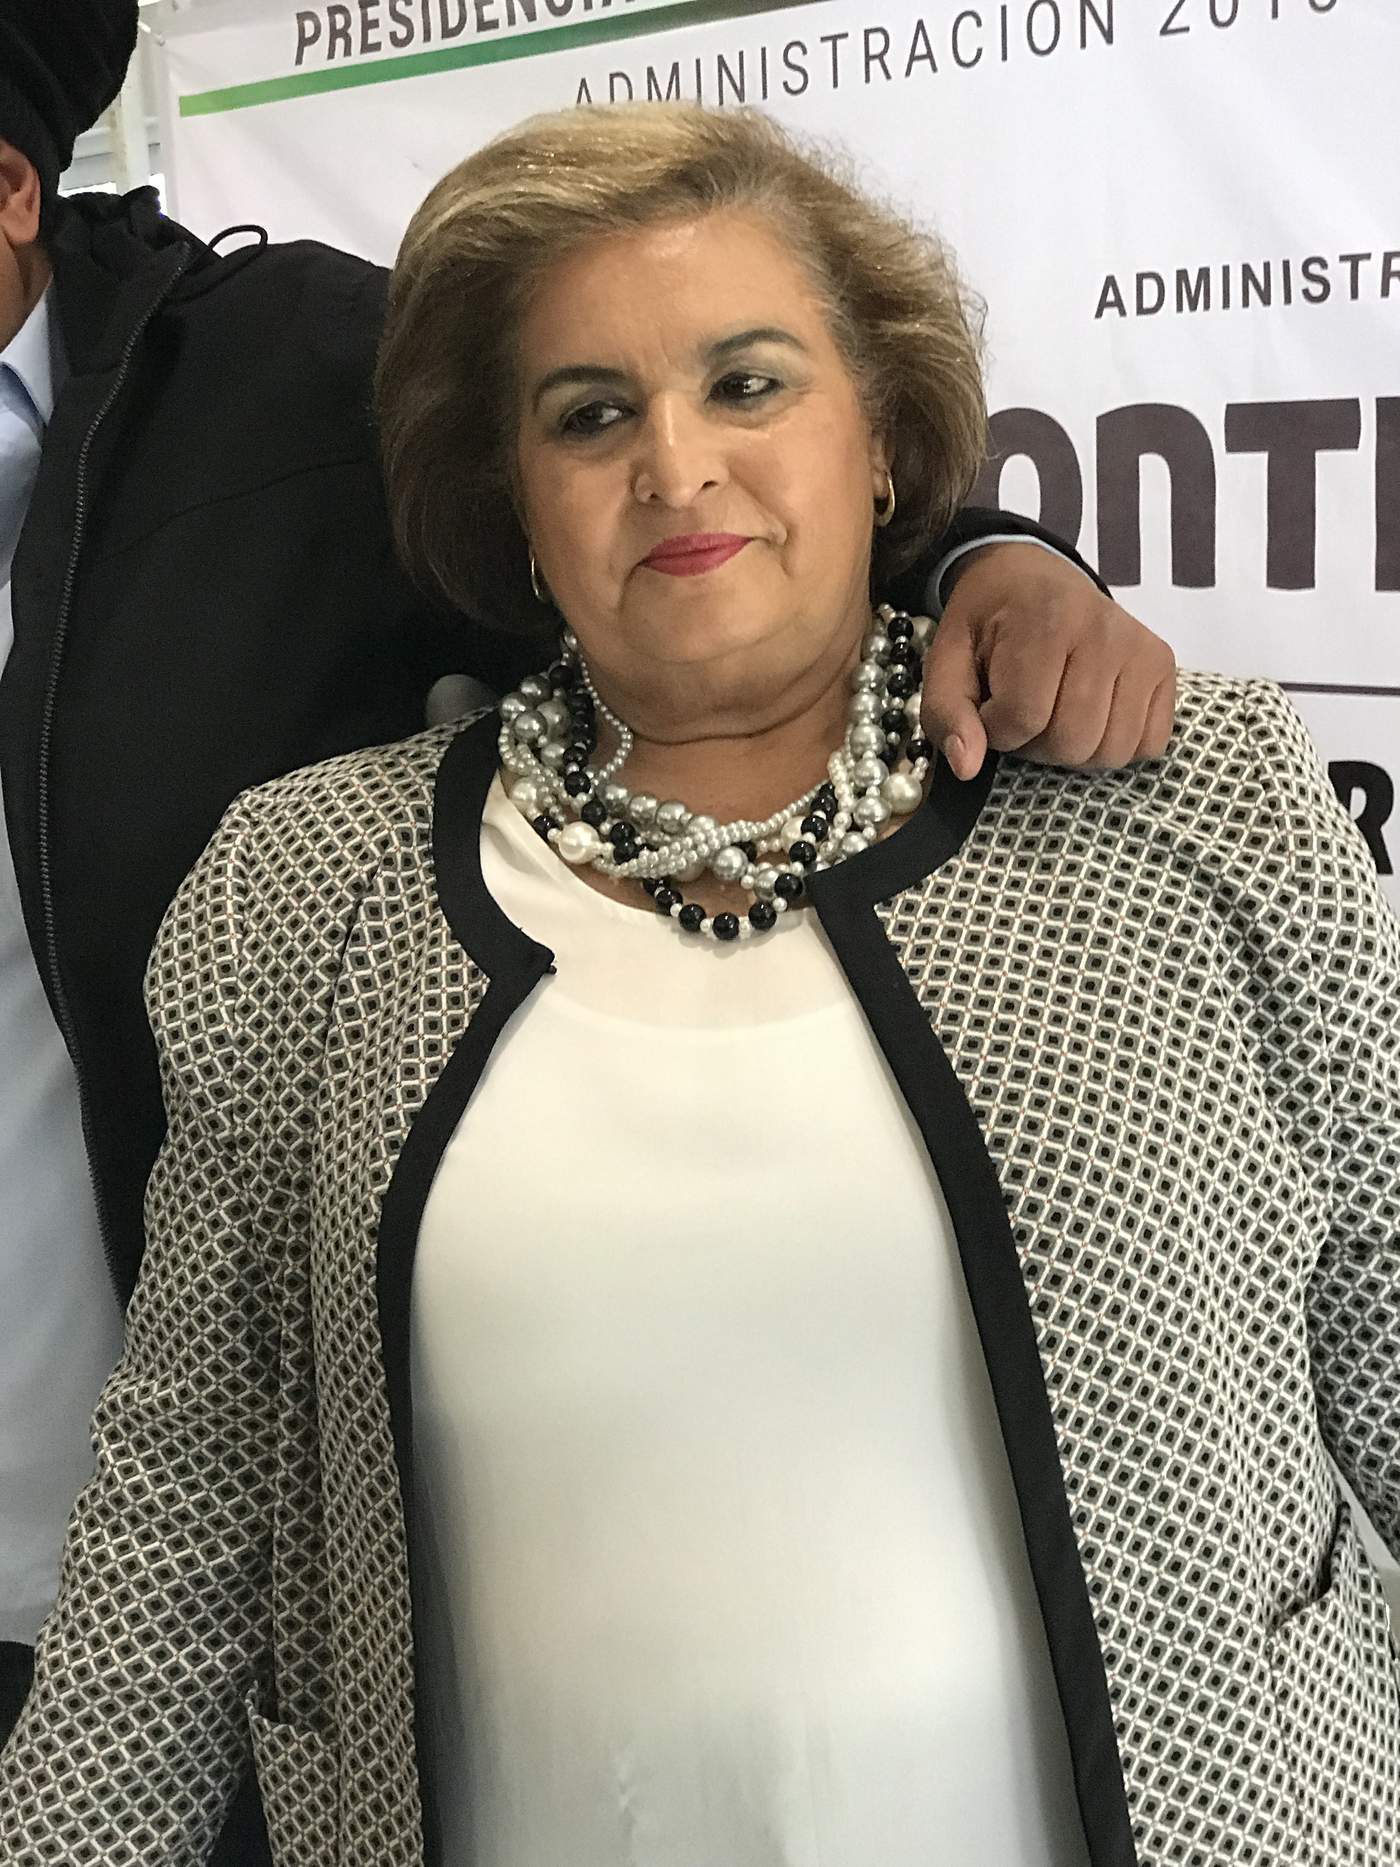 'Coahuila obtuvo un incremento de 16.6 por ciento en el presupuesto de egresos del gobierno federal', anunció la diputada Melba Farías Zambrano. 